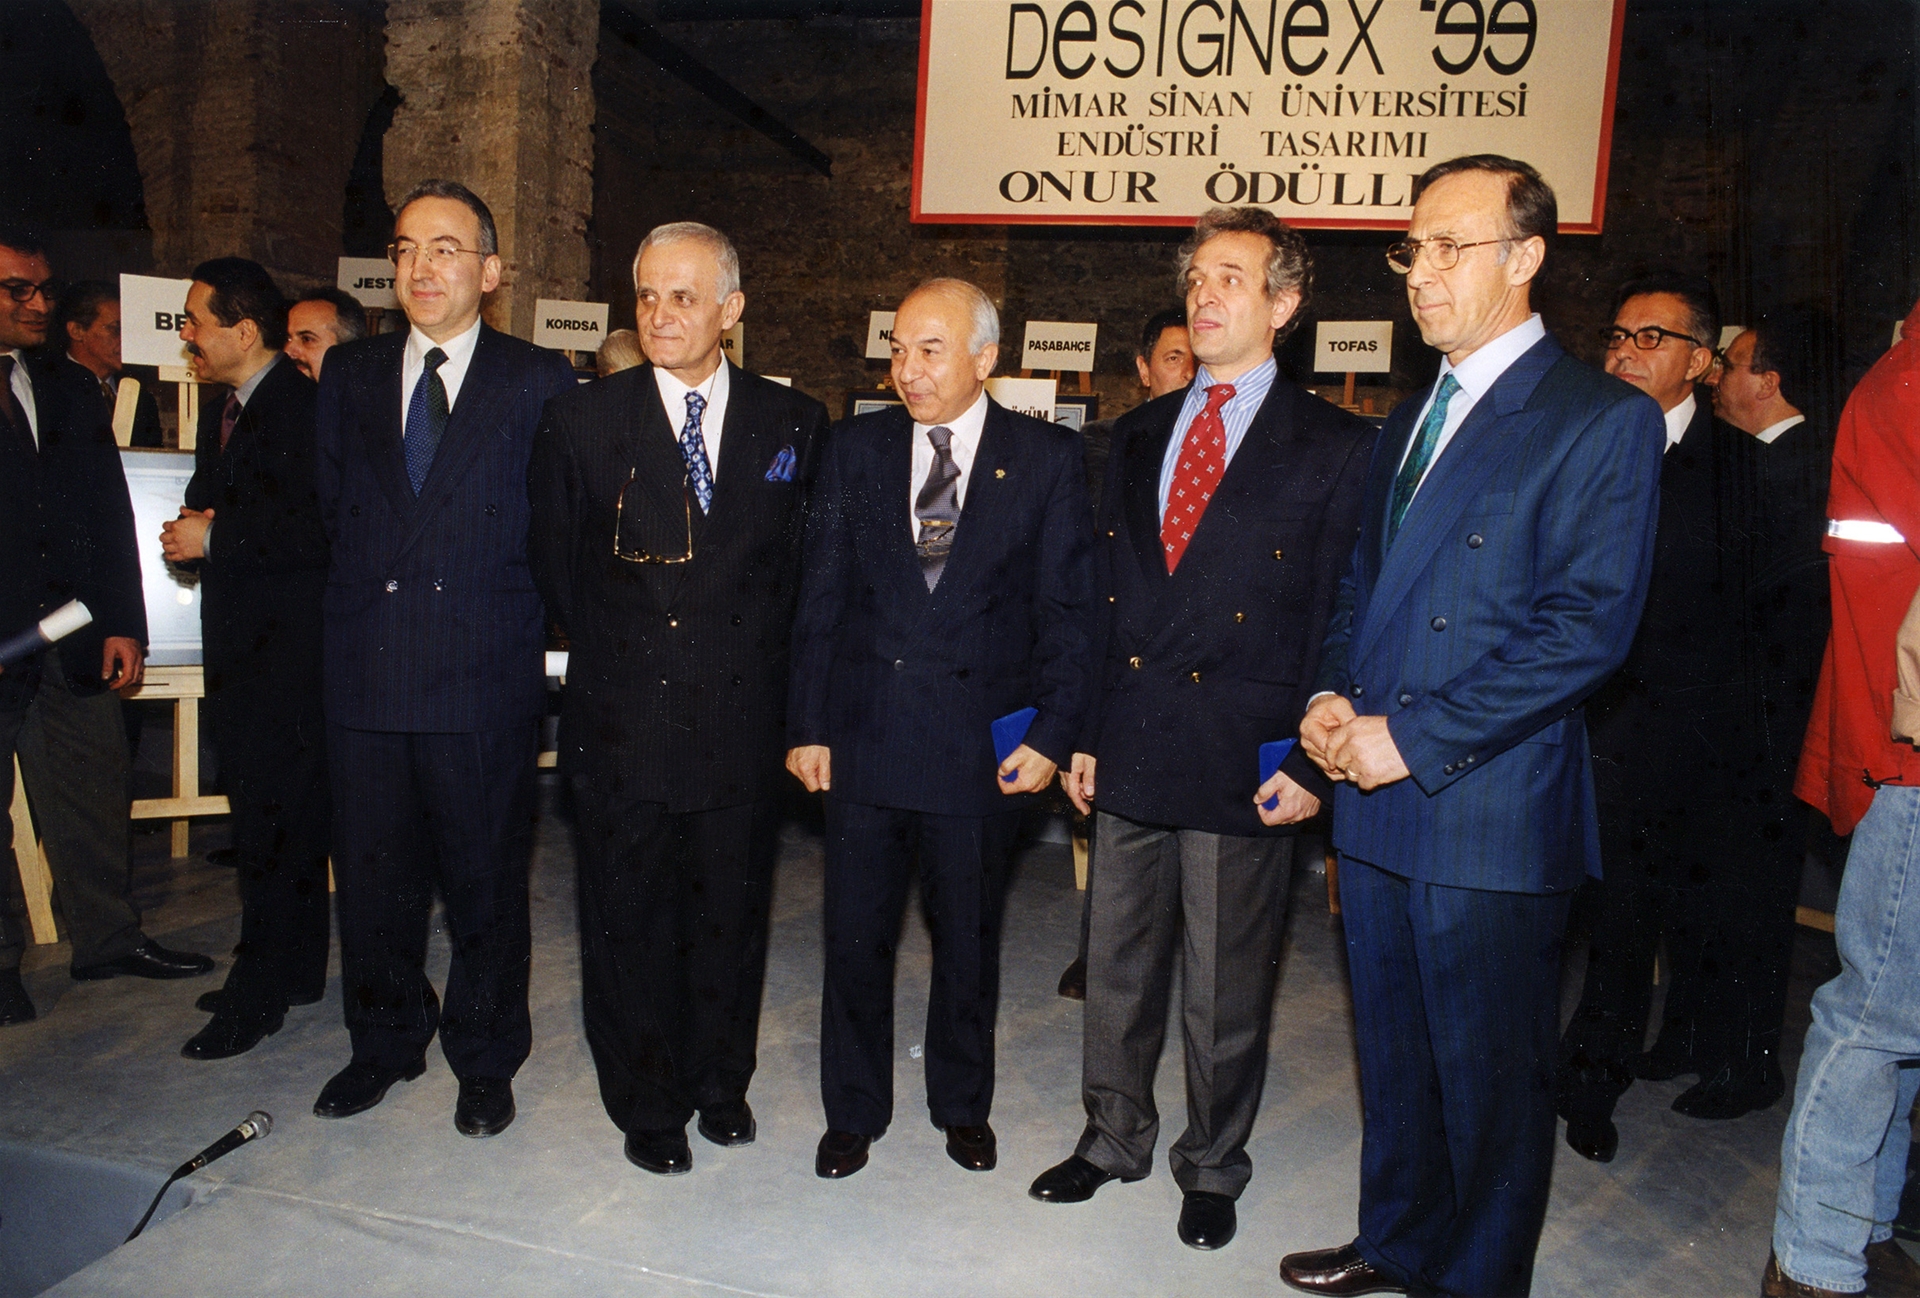 1999 Designex Ödülü töreninde MSÜ Ekibi, TOFAŞ CEO'su Jan Nahum  ve Şişecam Genel Müdürü Adnan Çağlayan